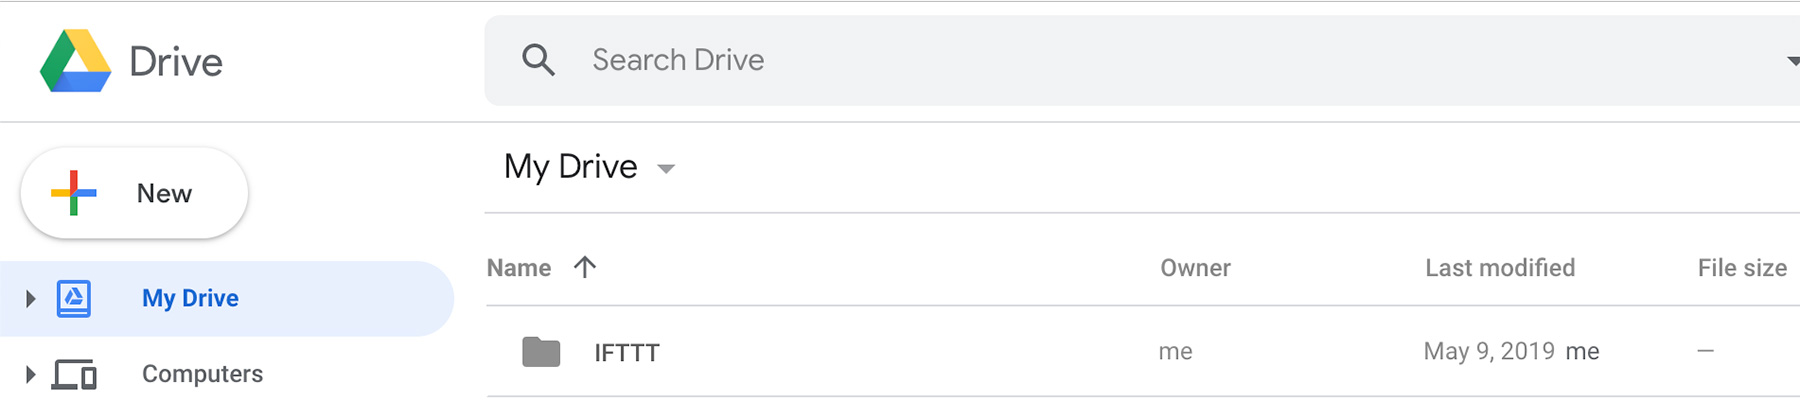 IFTTT Google Drive folder